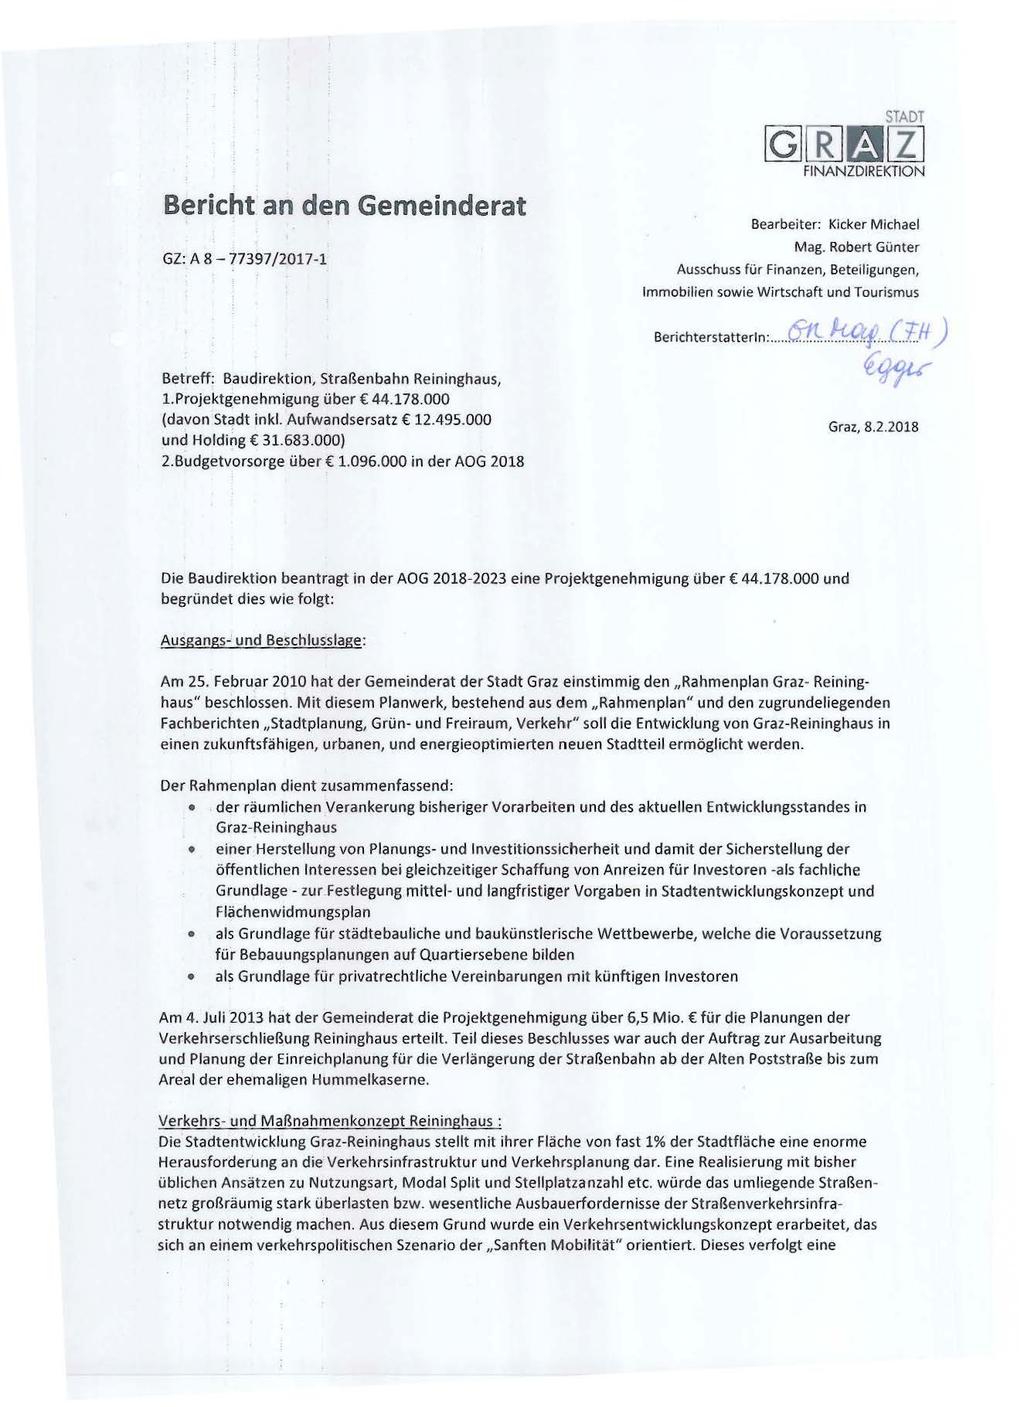 Bericht an den Gemeinderat GZ: A 8-77397/2017-1 Betreff: Baudirektion, Straßenbahn Reininghaus, l.projektgenehmigung über 44.178.000 (davon Stc1dt inkl. Aufwandsersatz 12.495.000 und Holding 31.683.